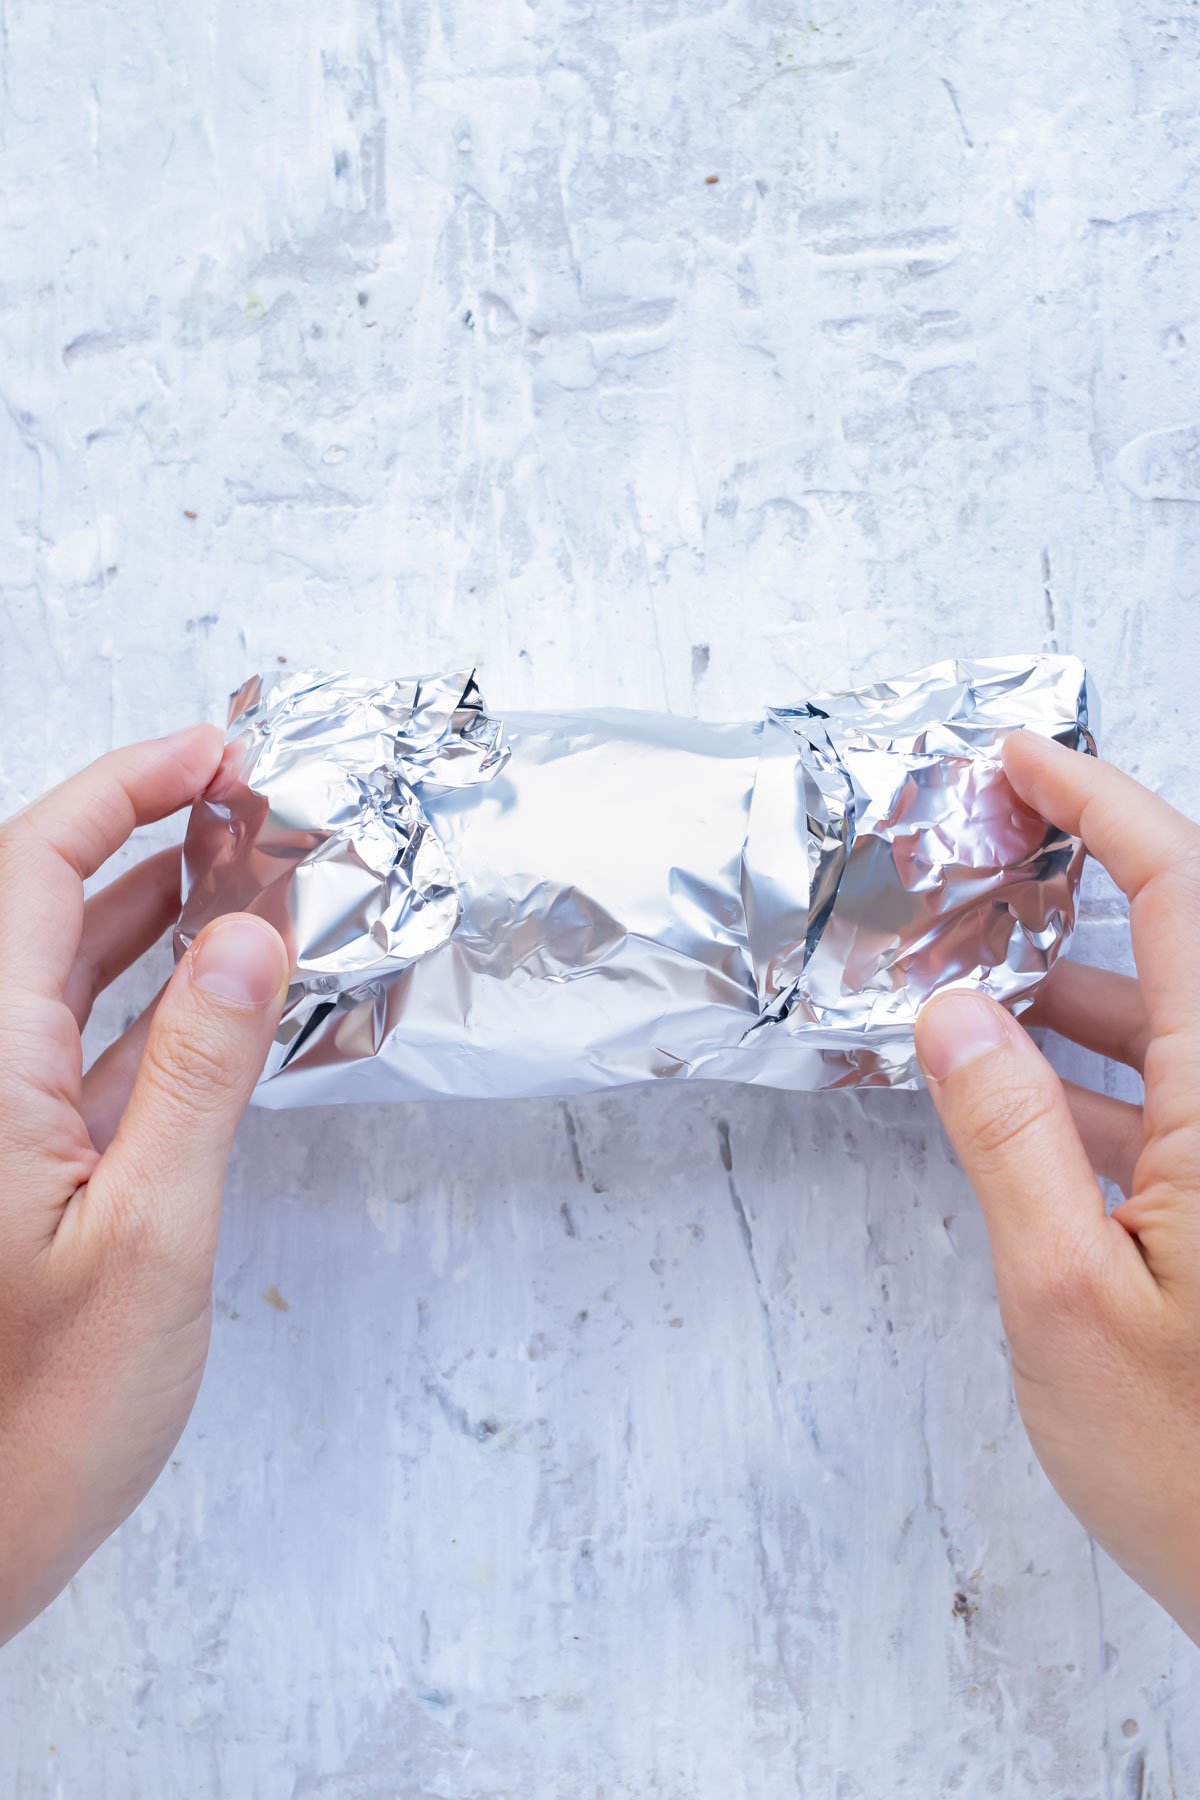 A hand rolls a sweet potato in foil.